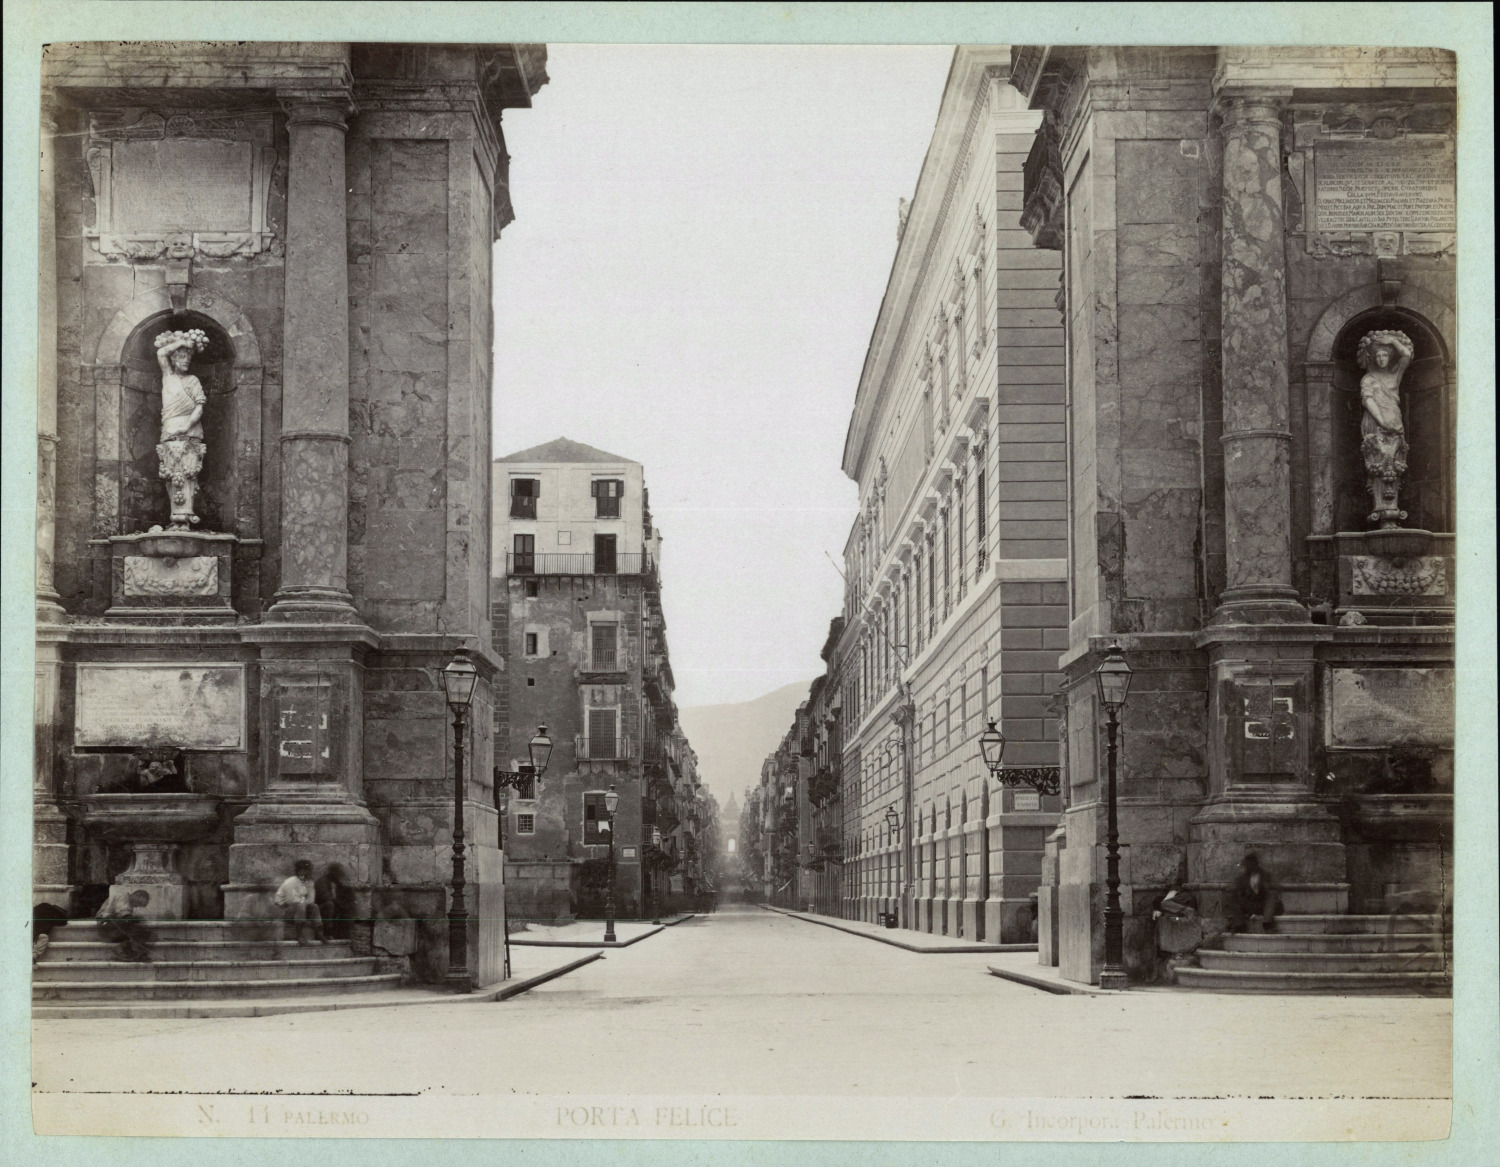 Italy, Sicily, Palermo, Porta Felice, ca.1880, vintage print vintage print vintage print, l